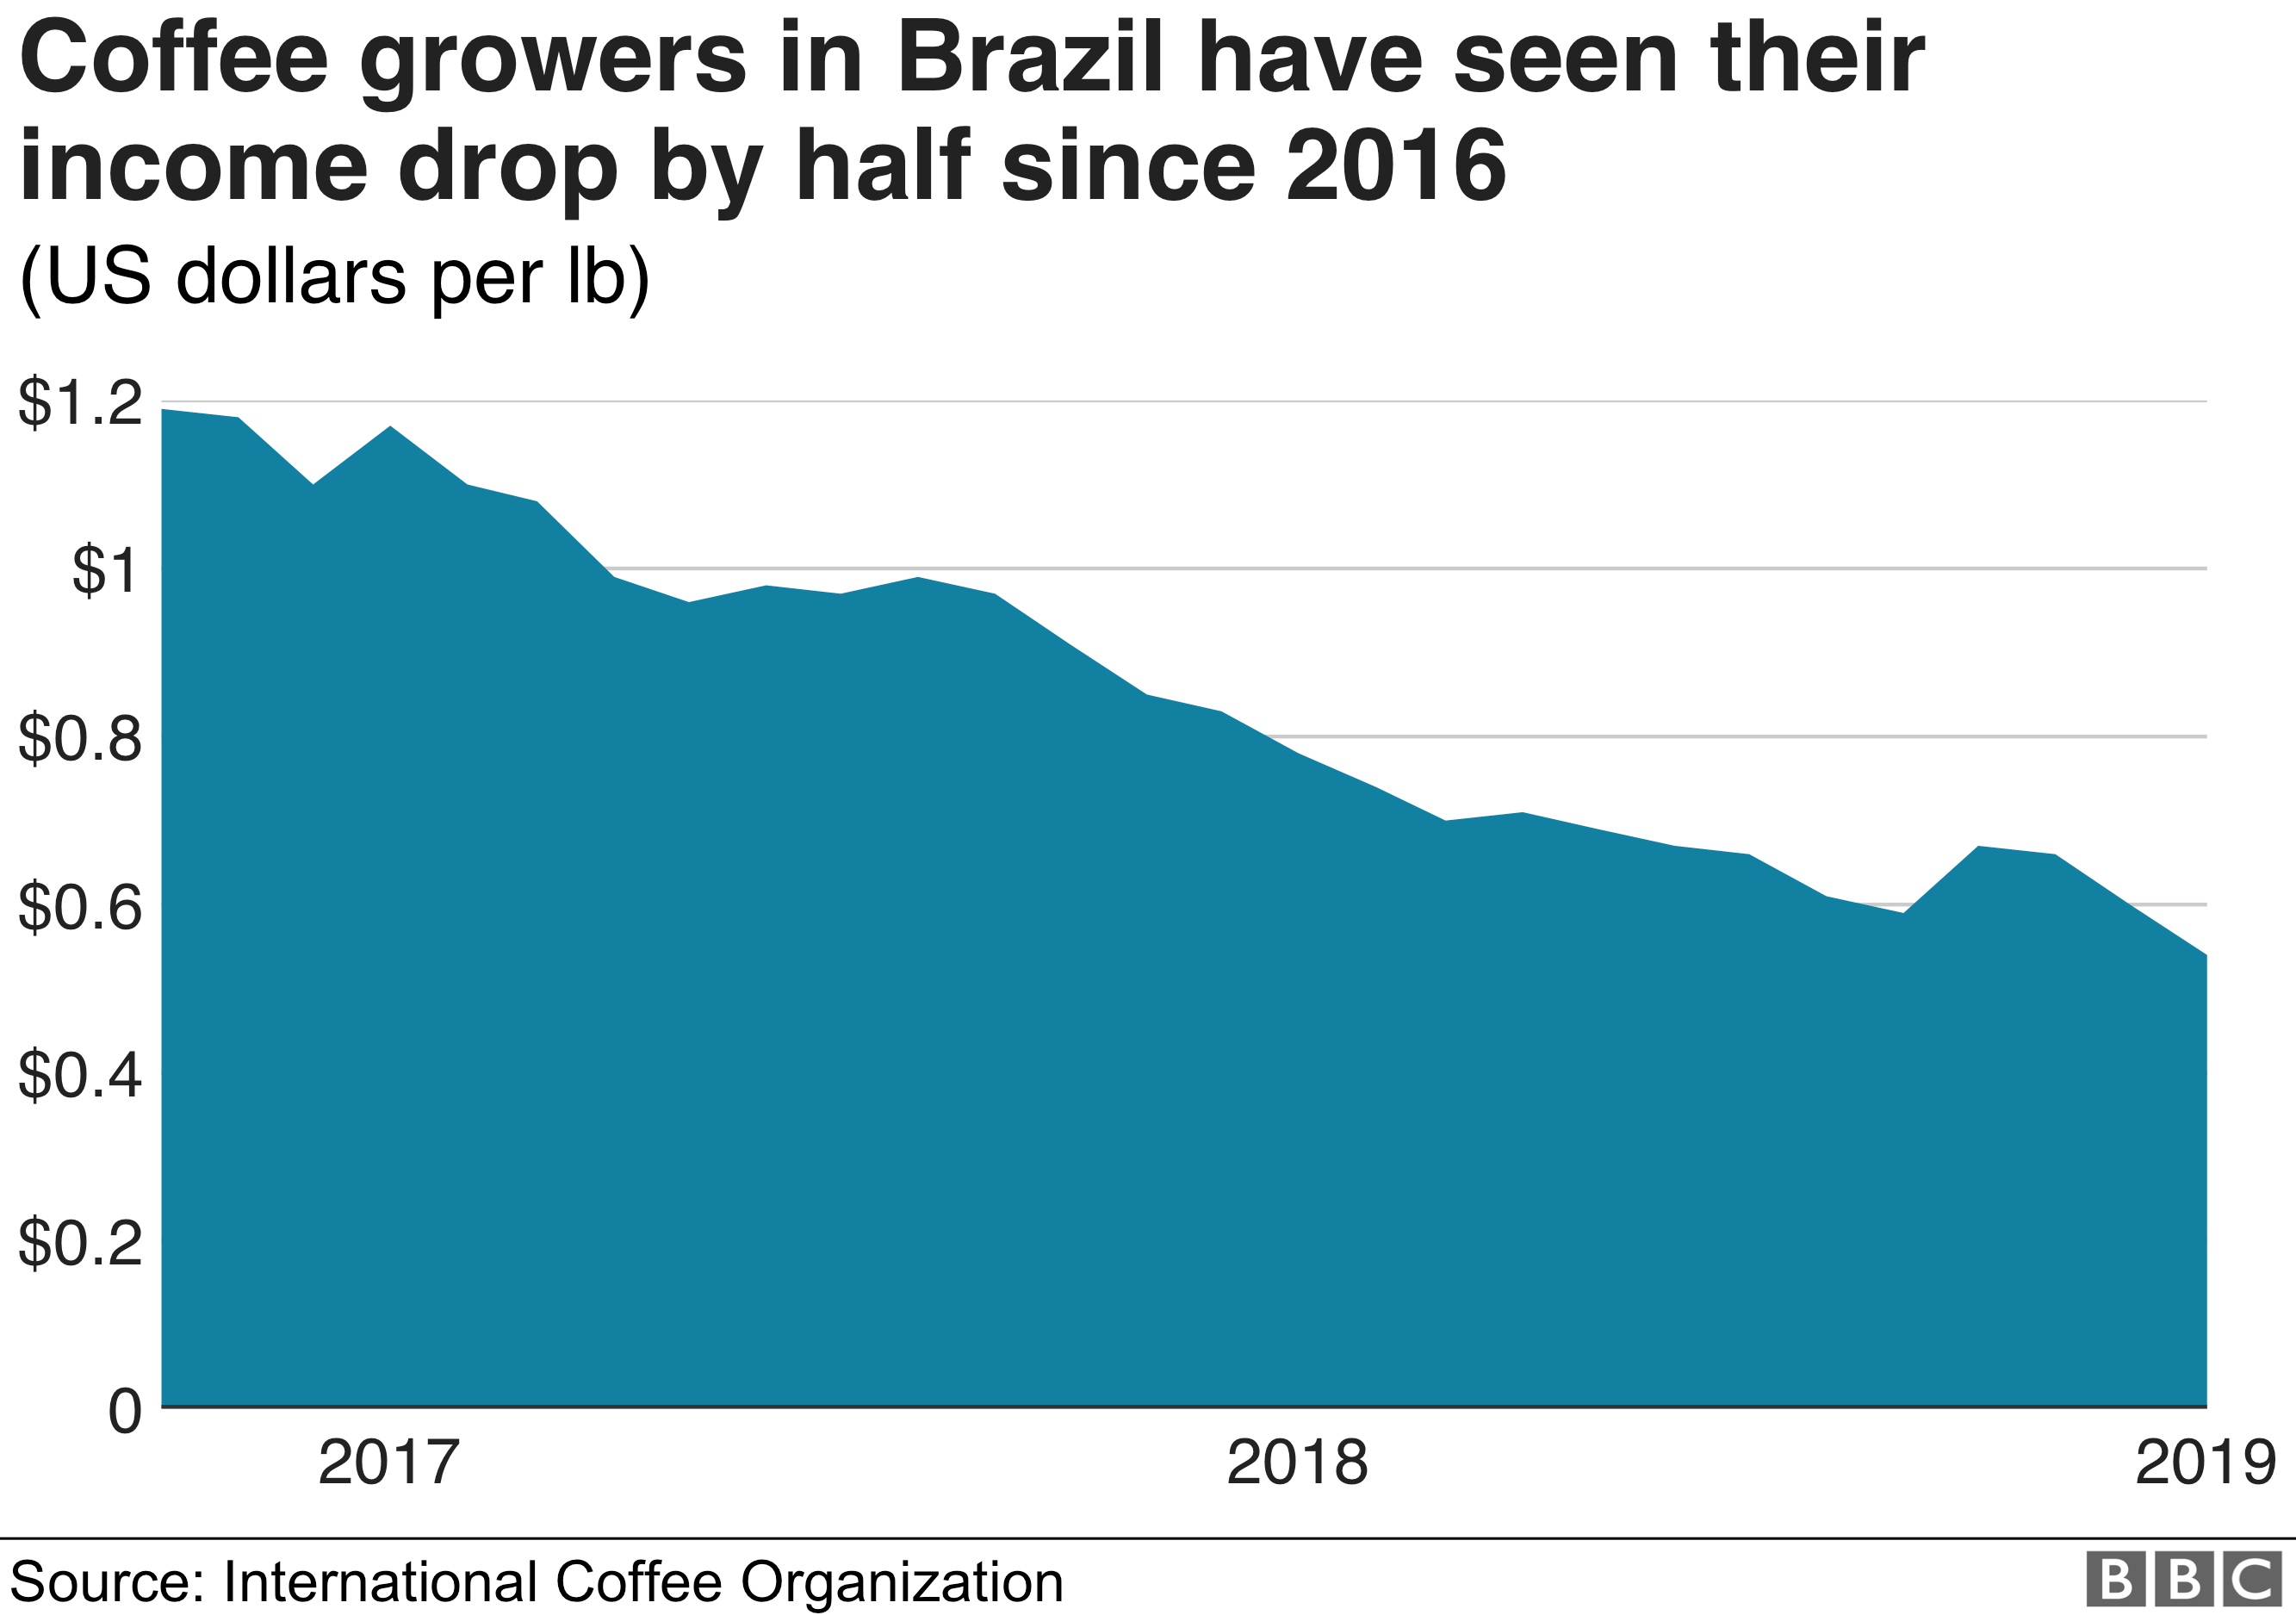 Цены на кофе для производителей снижаются с 2017 до начала 2019 года